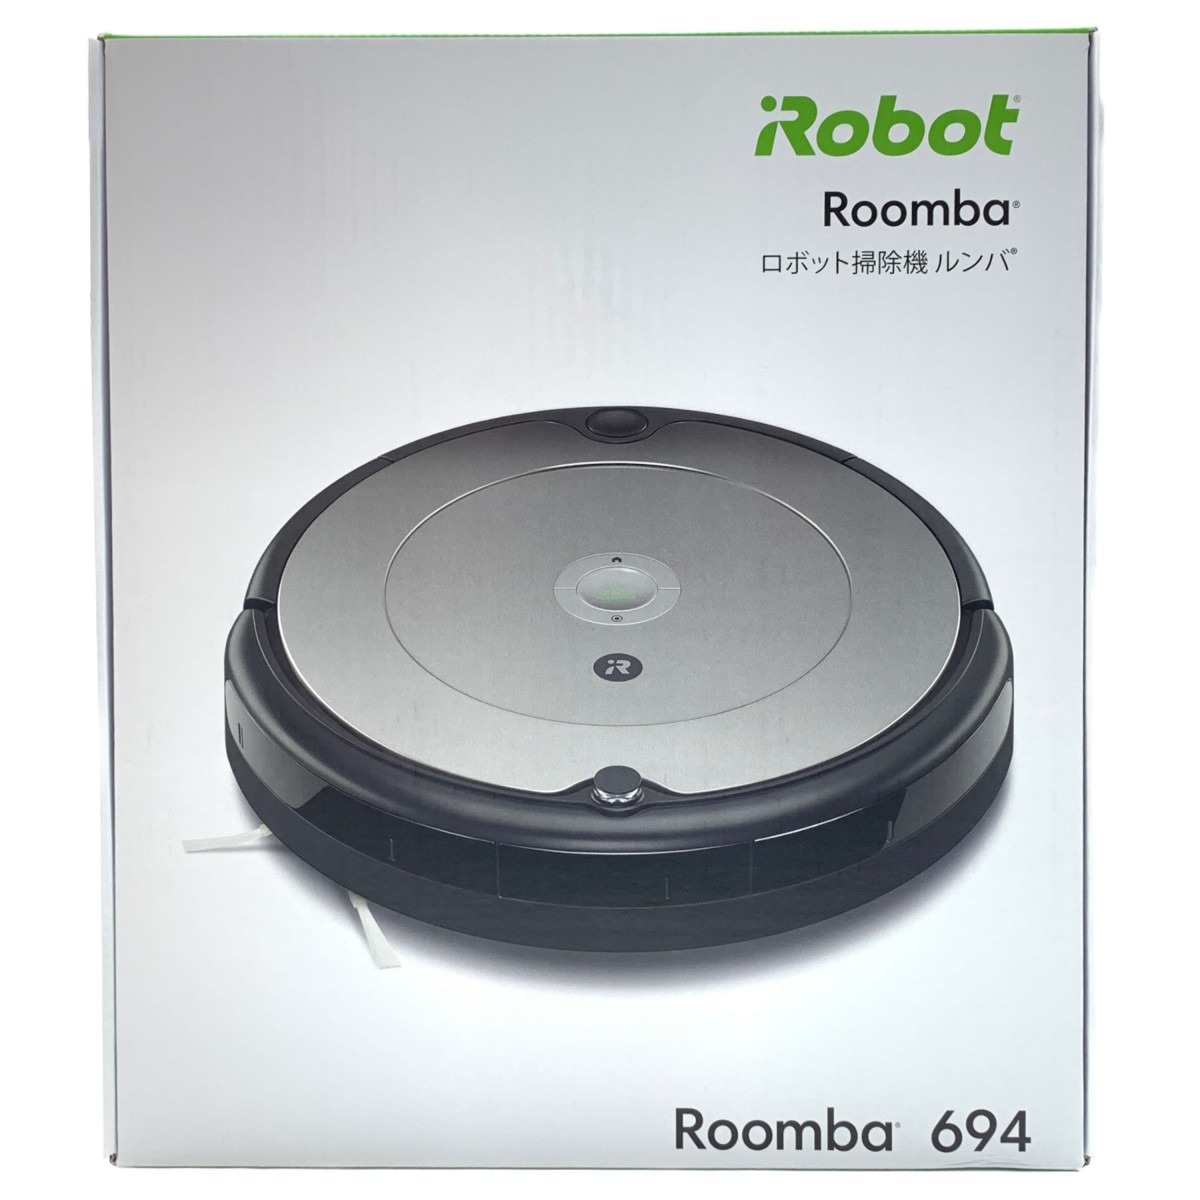 限定版 iRobot ルンバ i2 新品未使用 catalogo.foton.com.bo